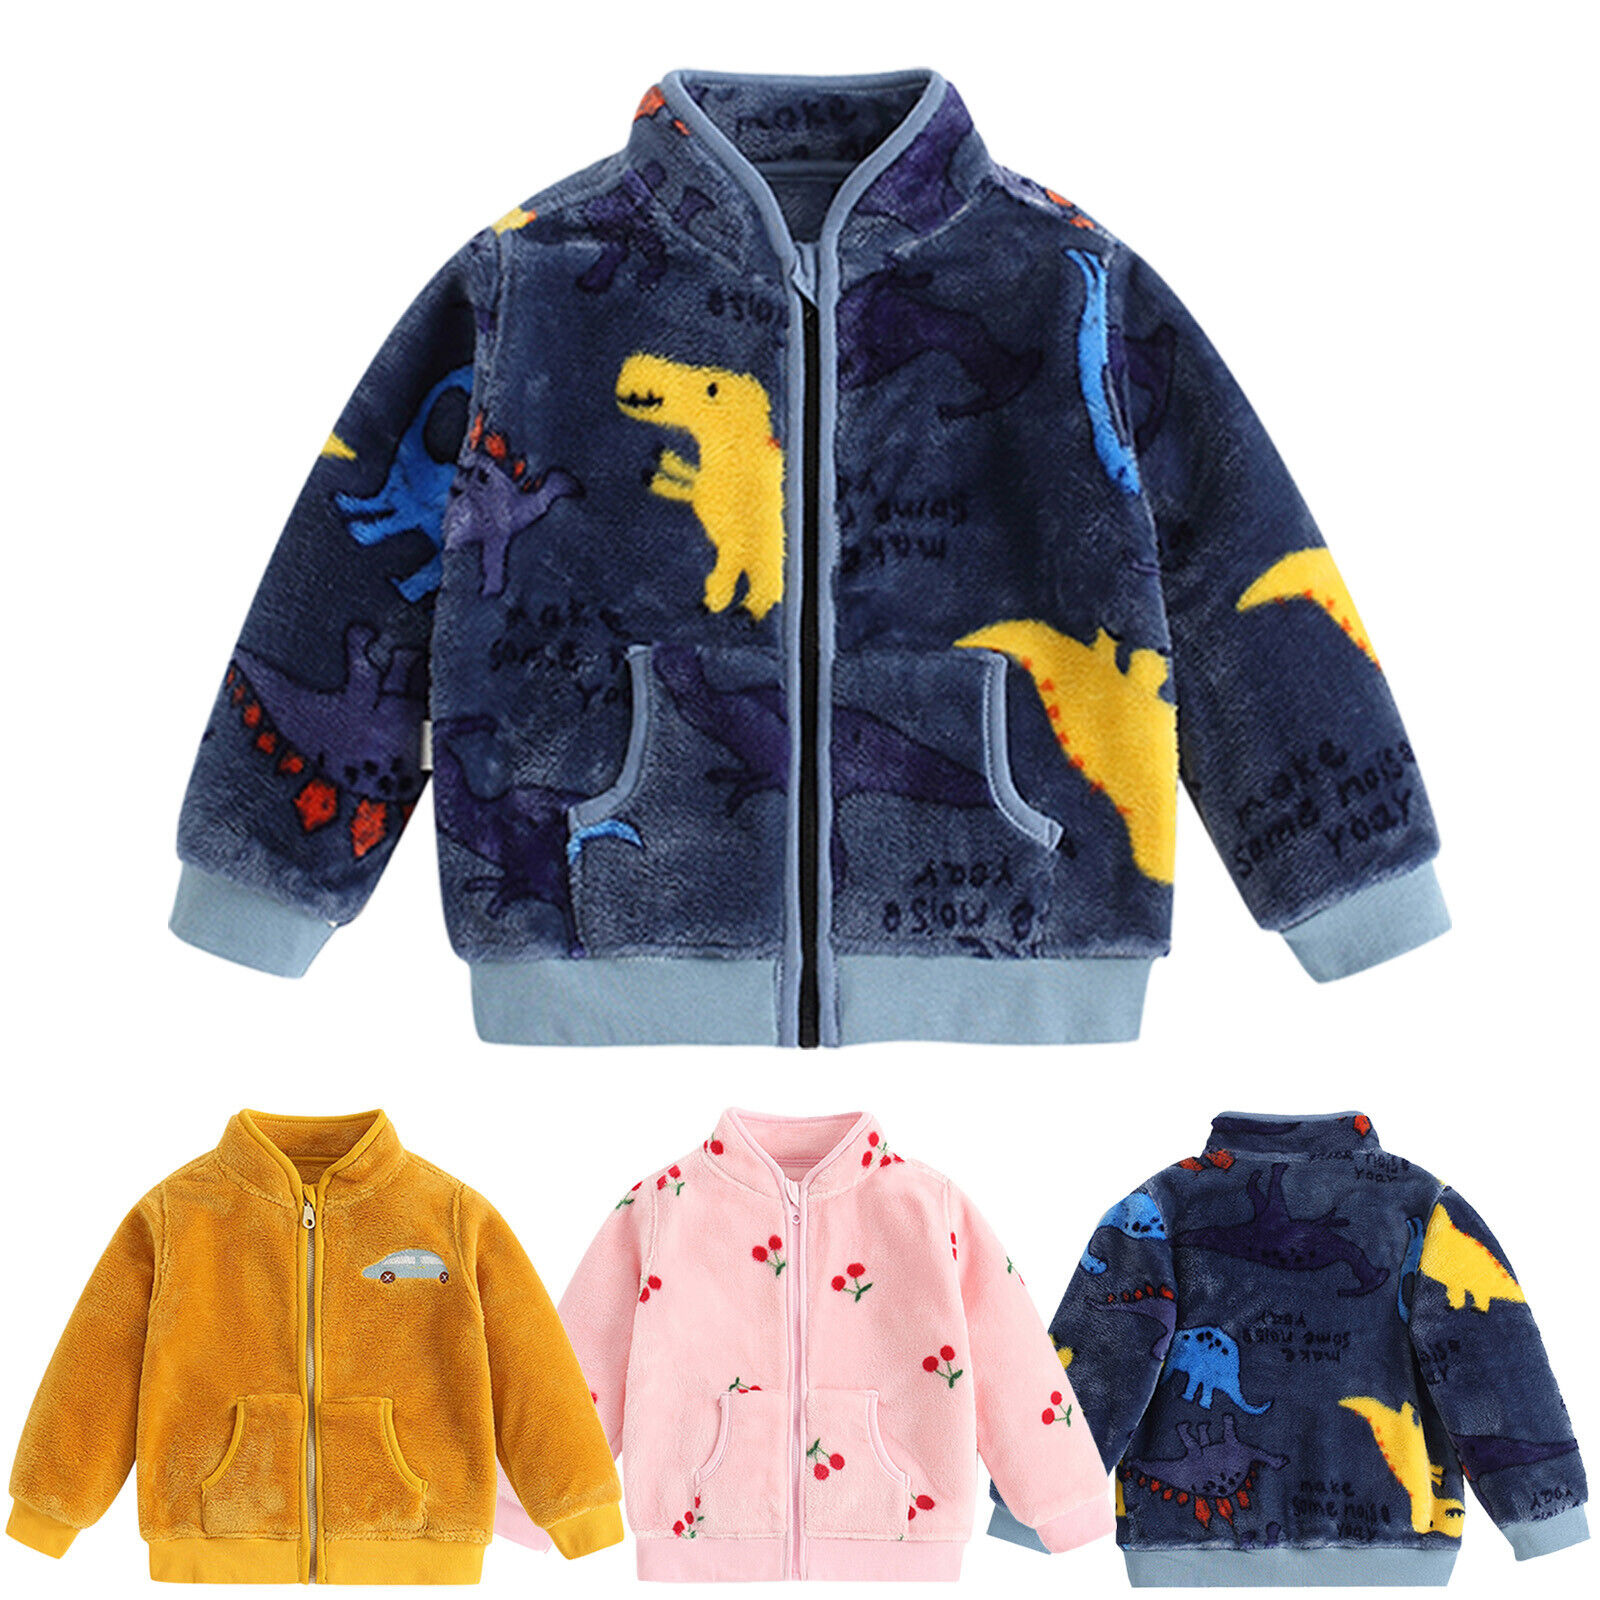 Winter Kids Polar Fleece Zip Jacket Size 6M-5T School Winter Warm Boys Girls Unbanded Does Not Apply